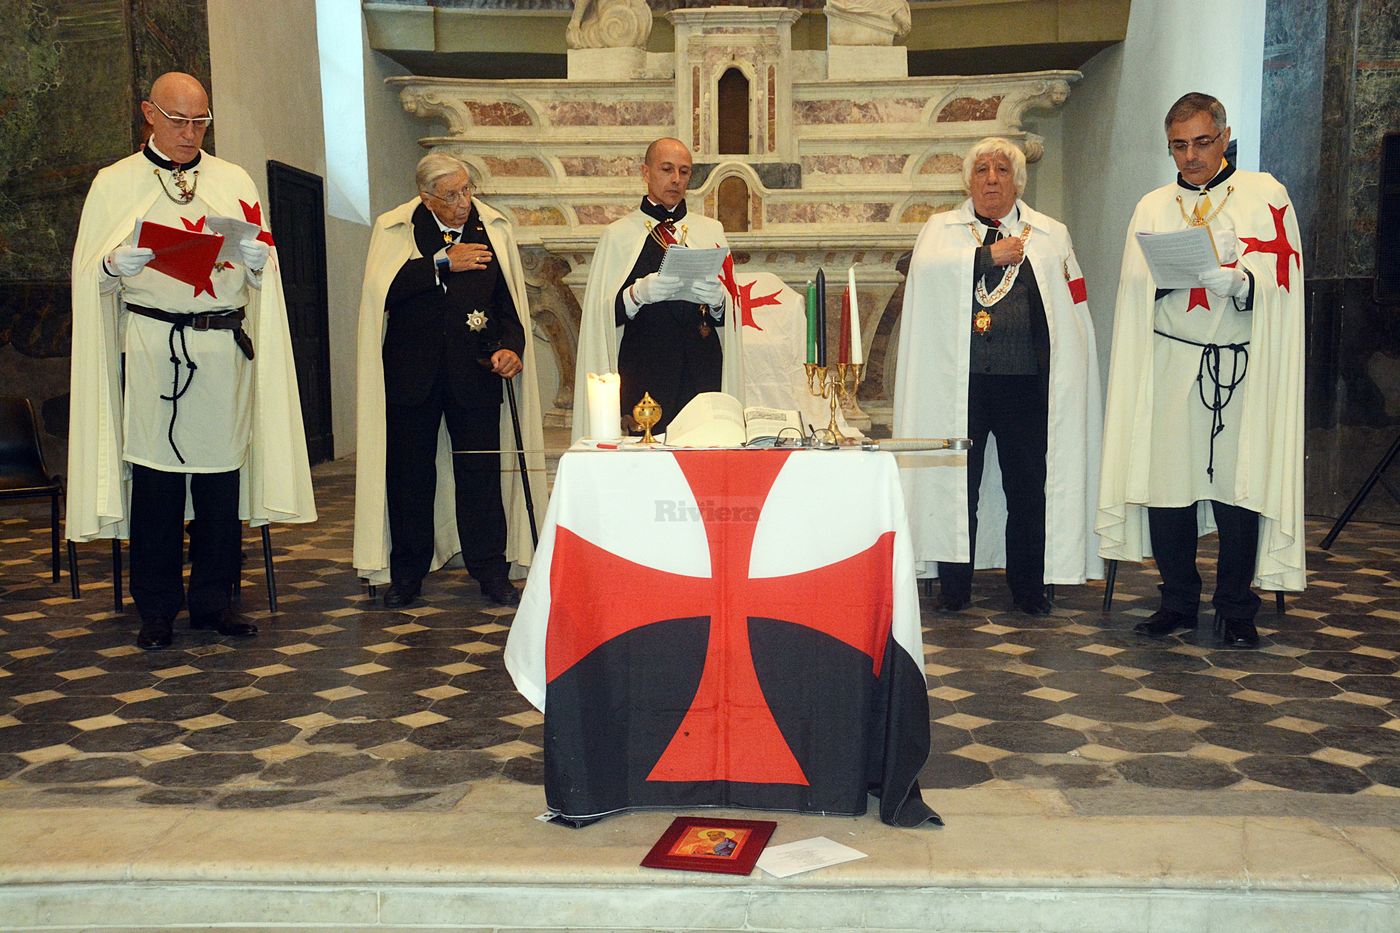 Cavalieri Templari ex chiesa San Francesco Ventimiglia 1 dicembre 2018_39